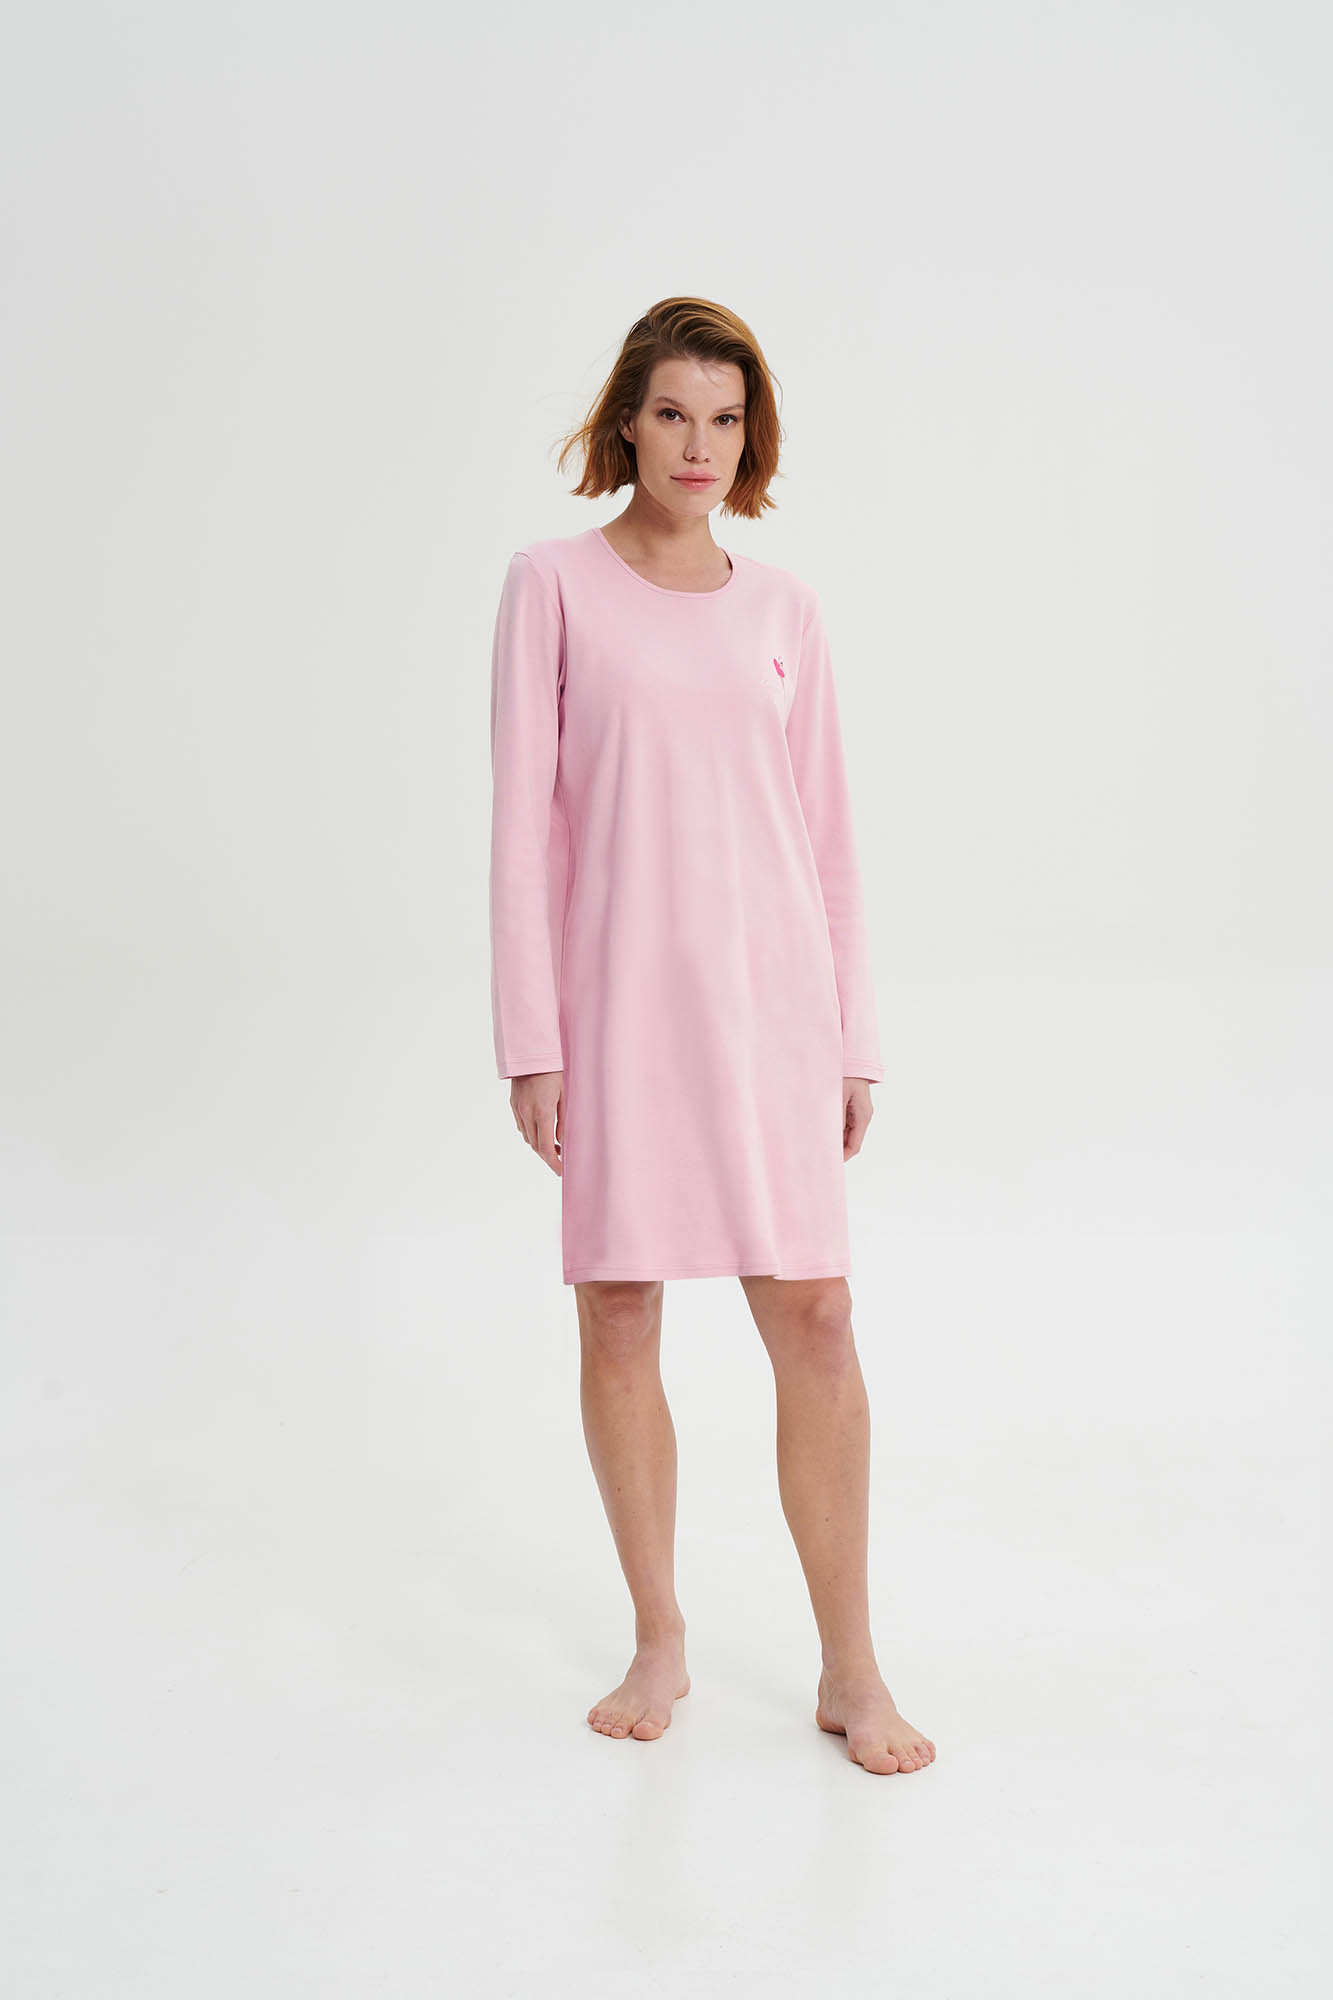 Vamp - Noční košile s dlouhým rukávem 19456 - Vamp pink nectar S